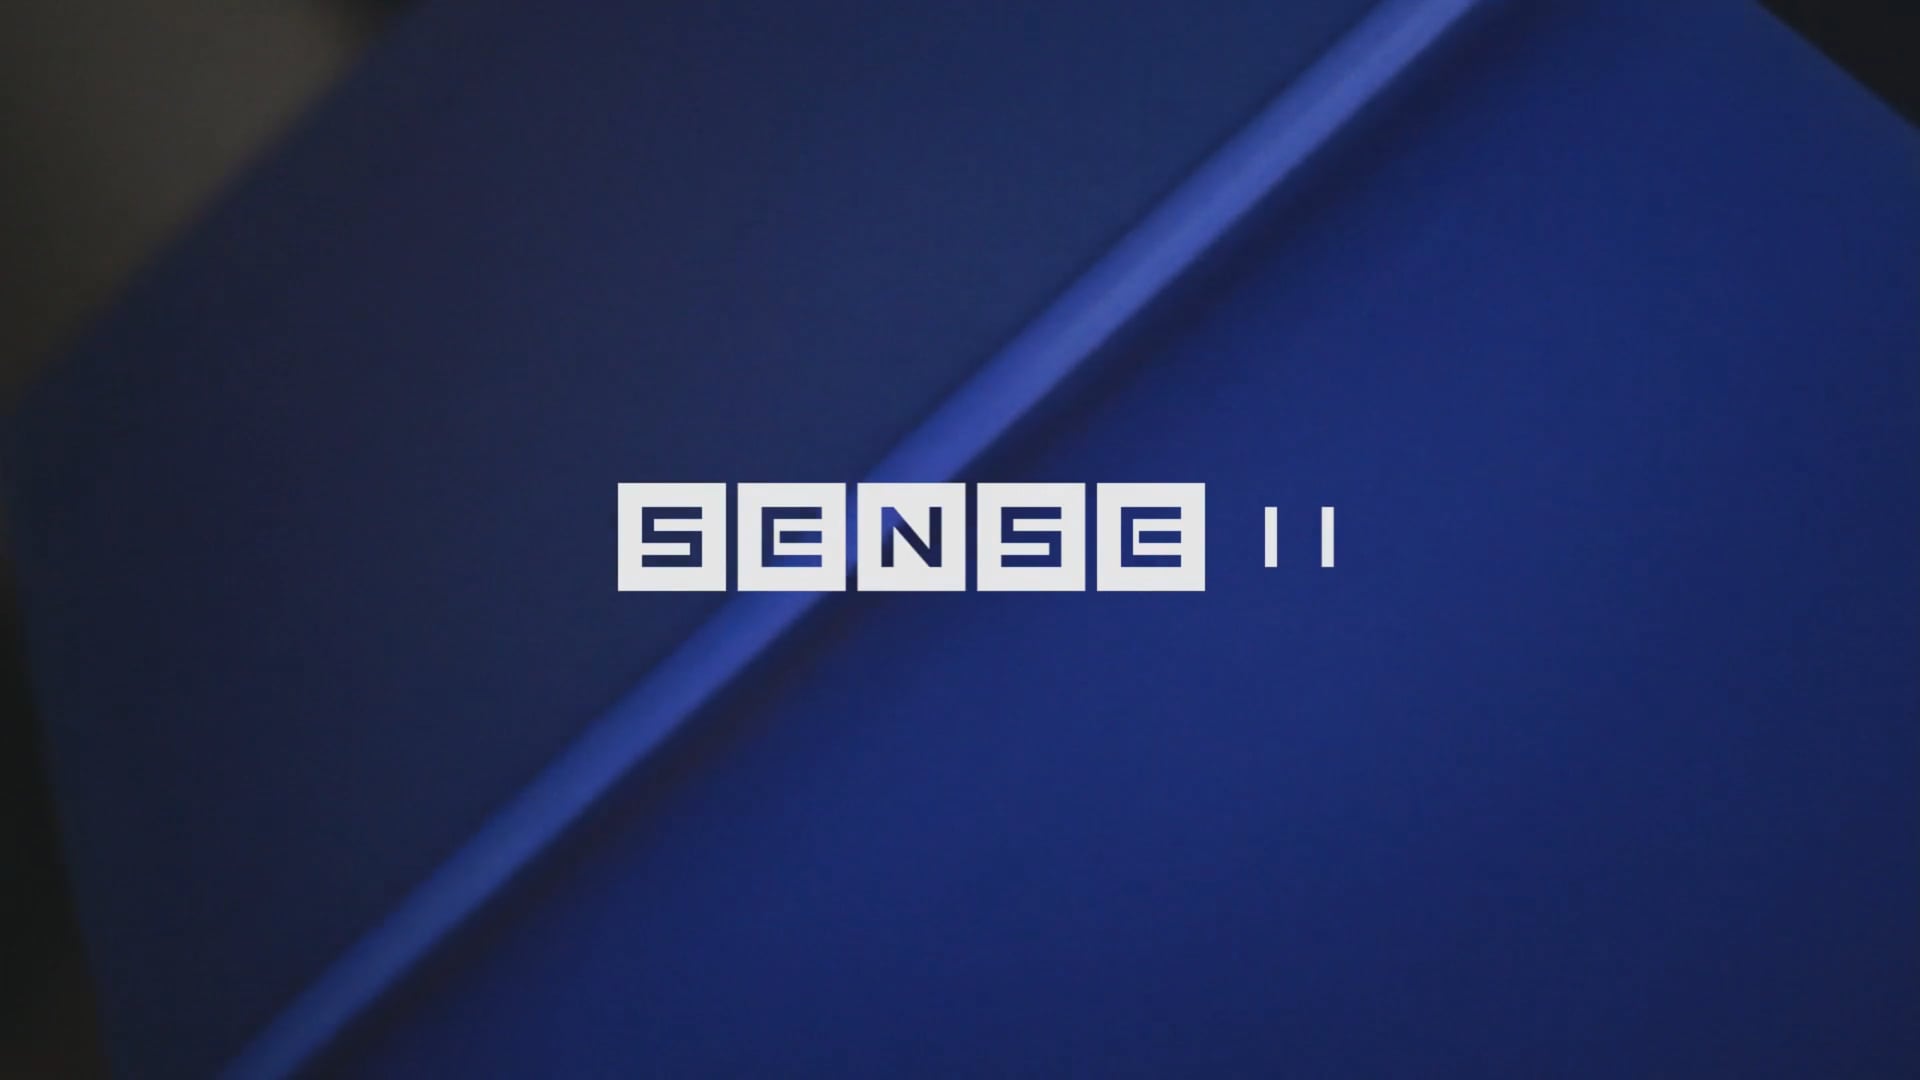 Teaser SENSE II - "LA MAISON BLEUE" Pop Up Sensorial